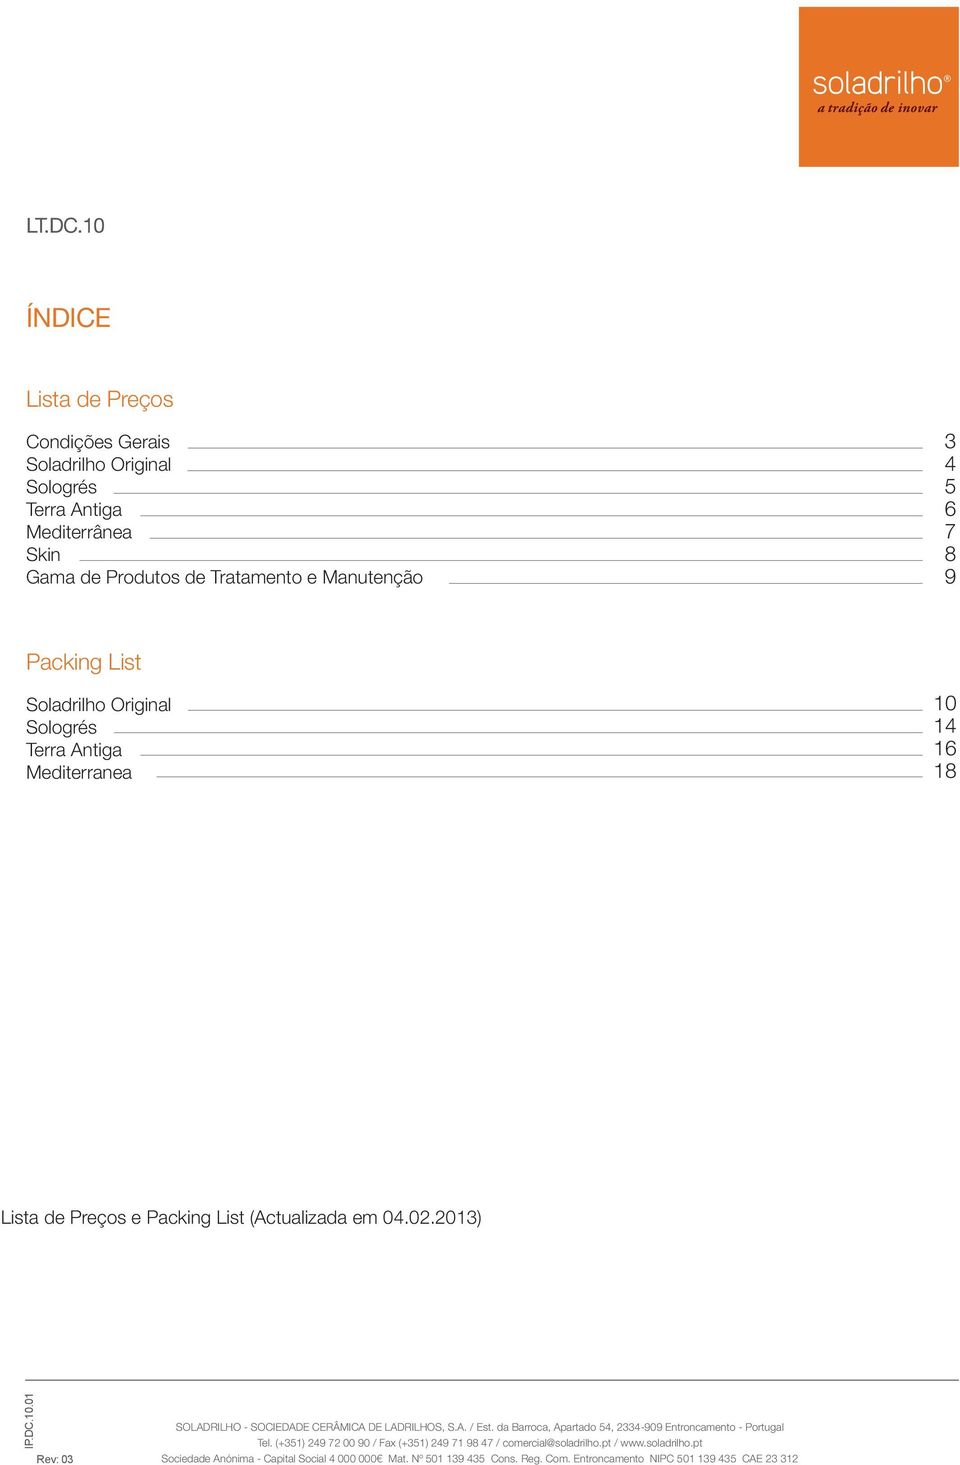 Packing List (Actualizada em 0.02.2013) SOLADRILHO SOCIEDADE CERÂMICA DE LADRILHOS, S.A. / Est.